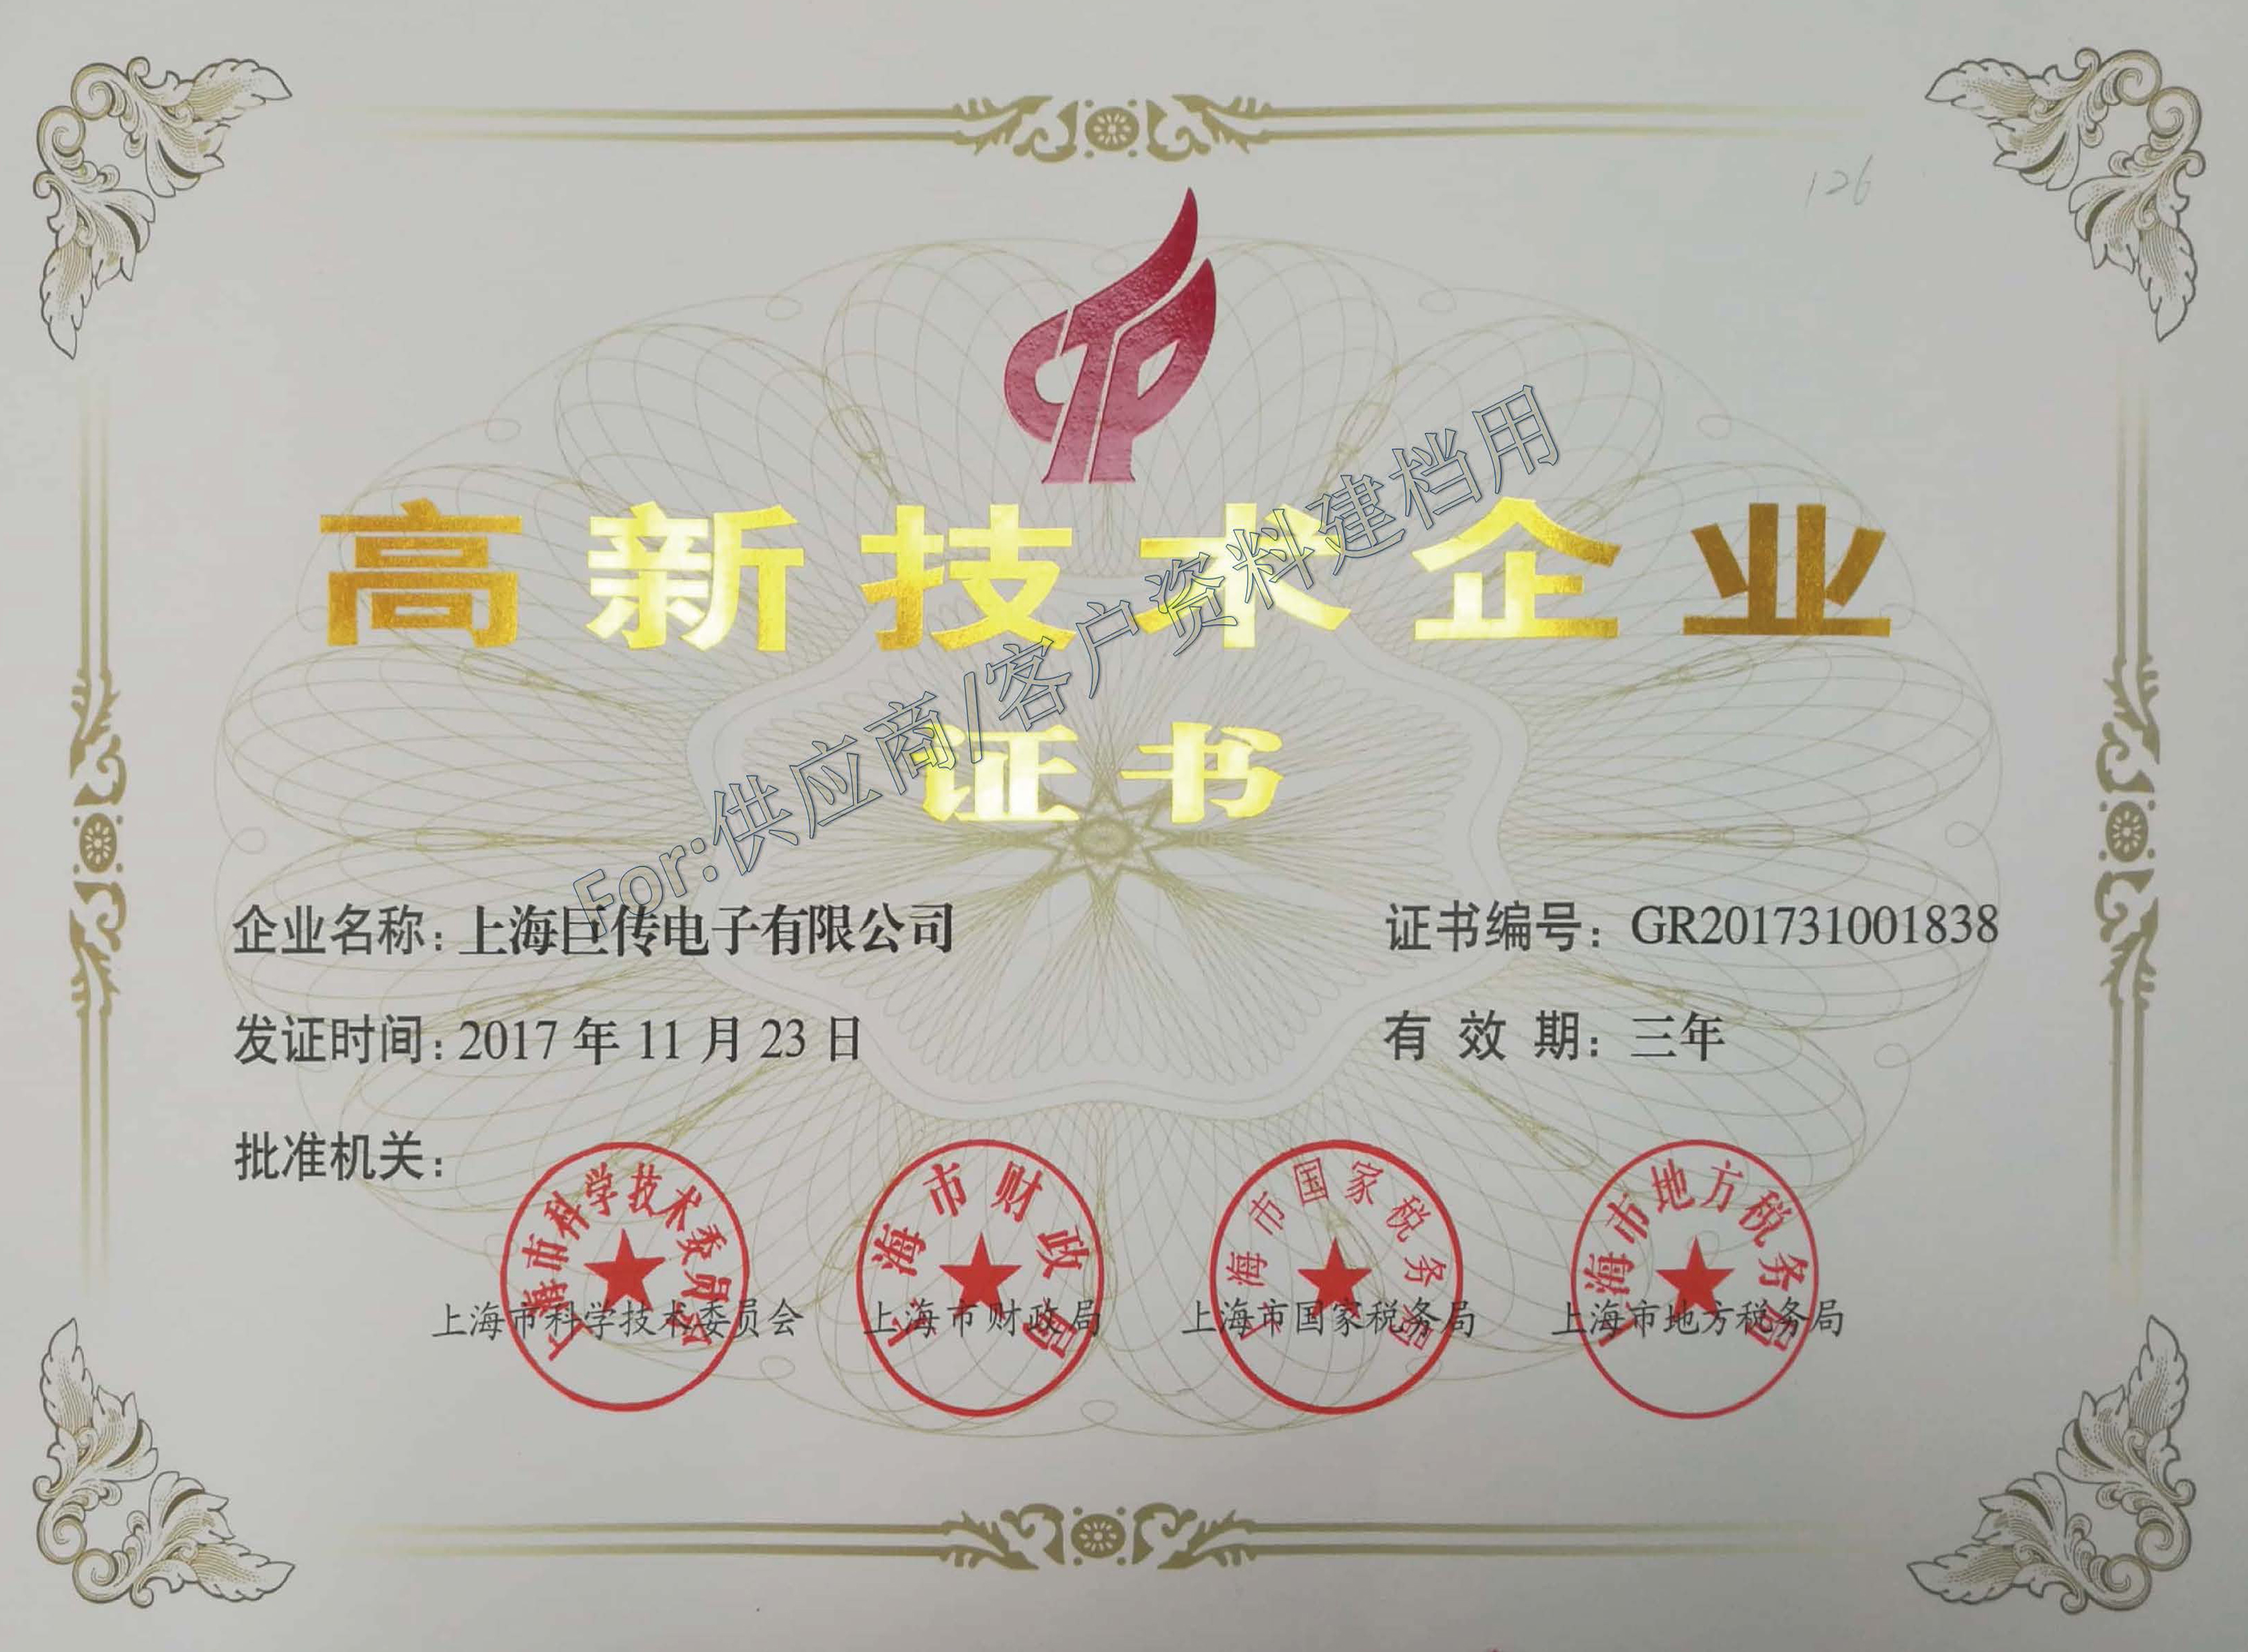 上海巨傳電子榮獲上海市高新技術企業證書認定